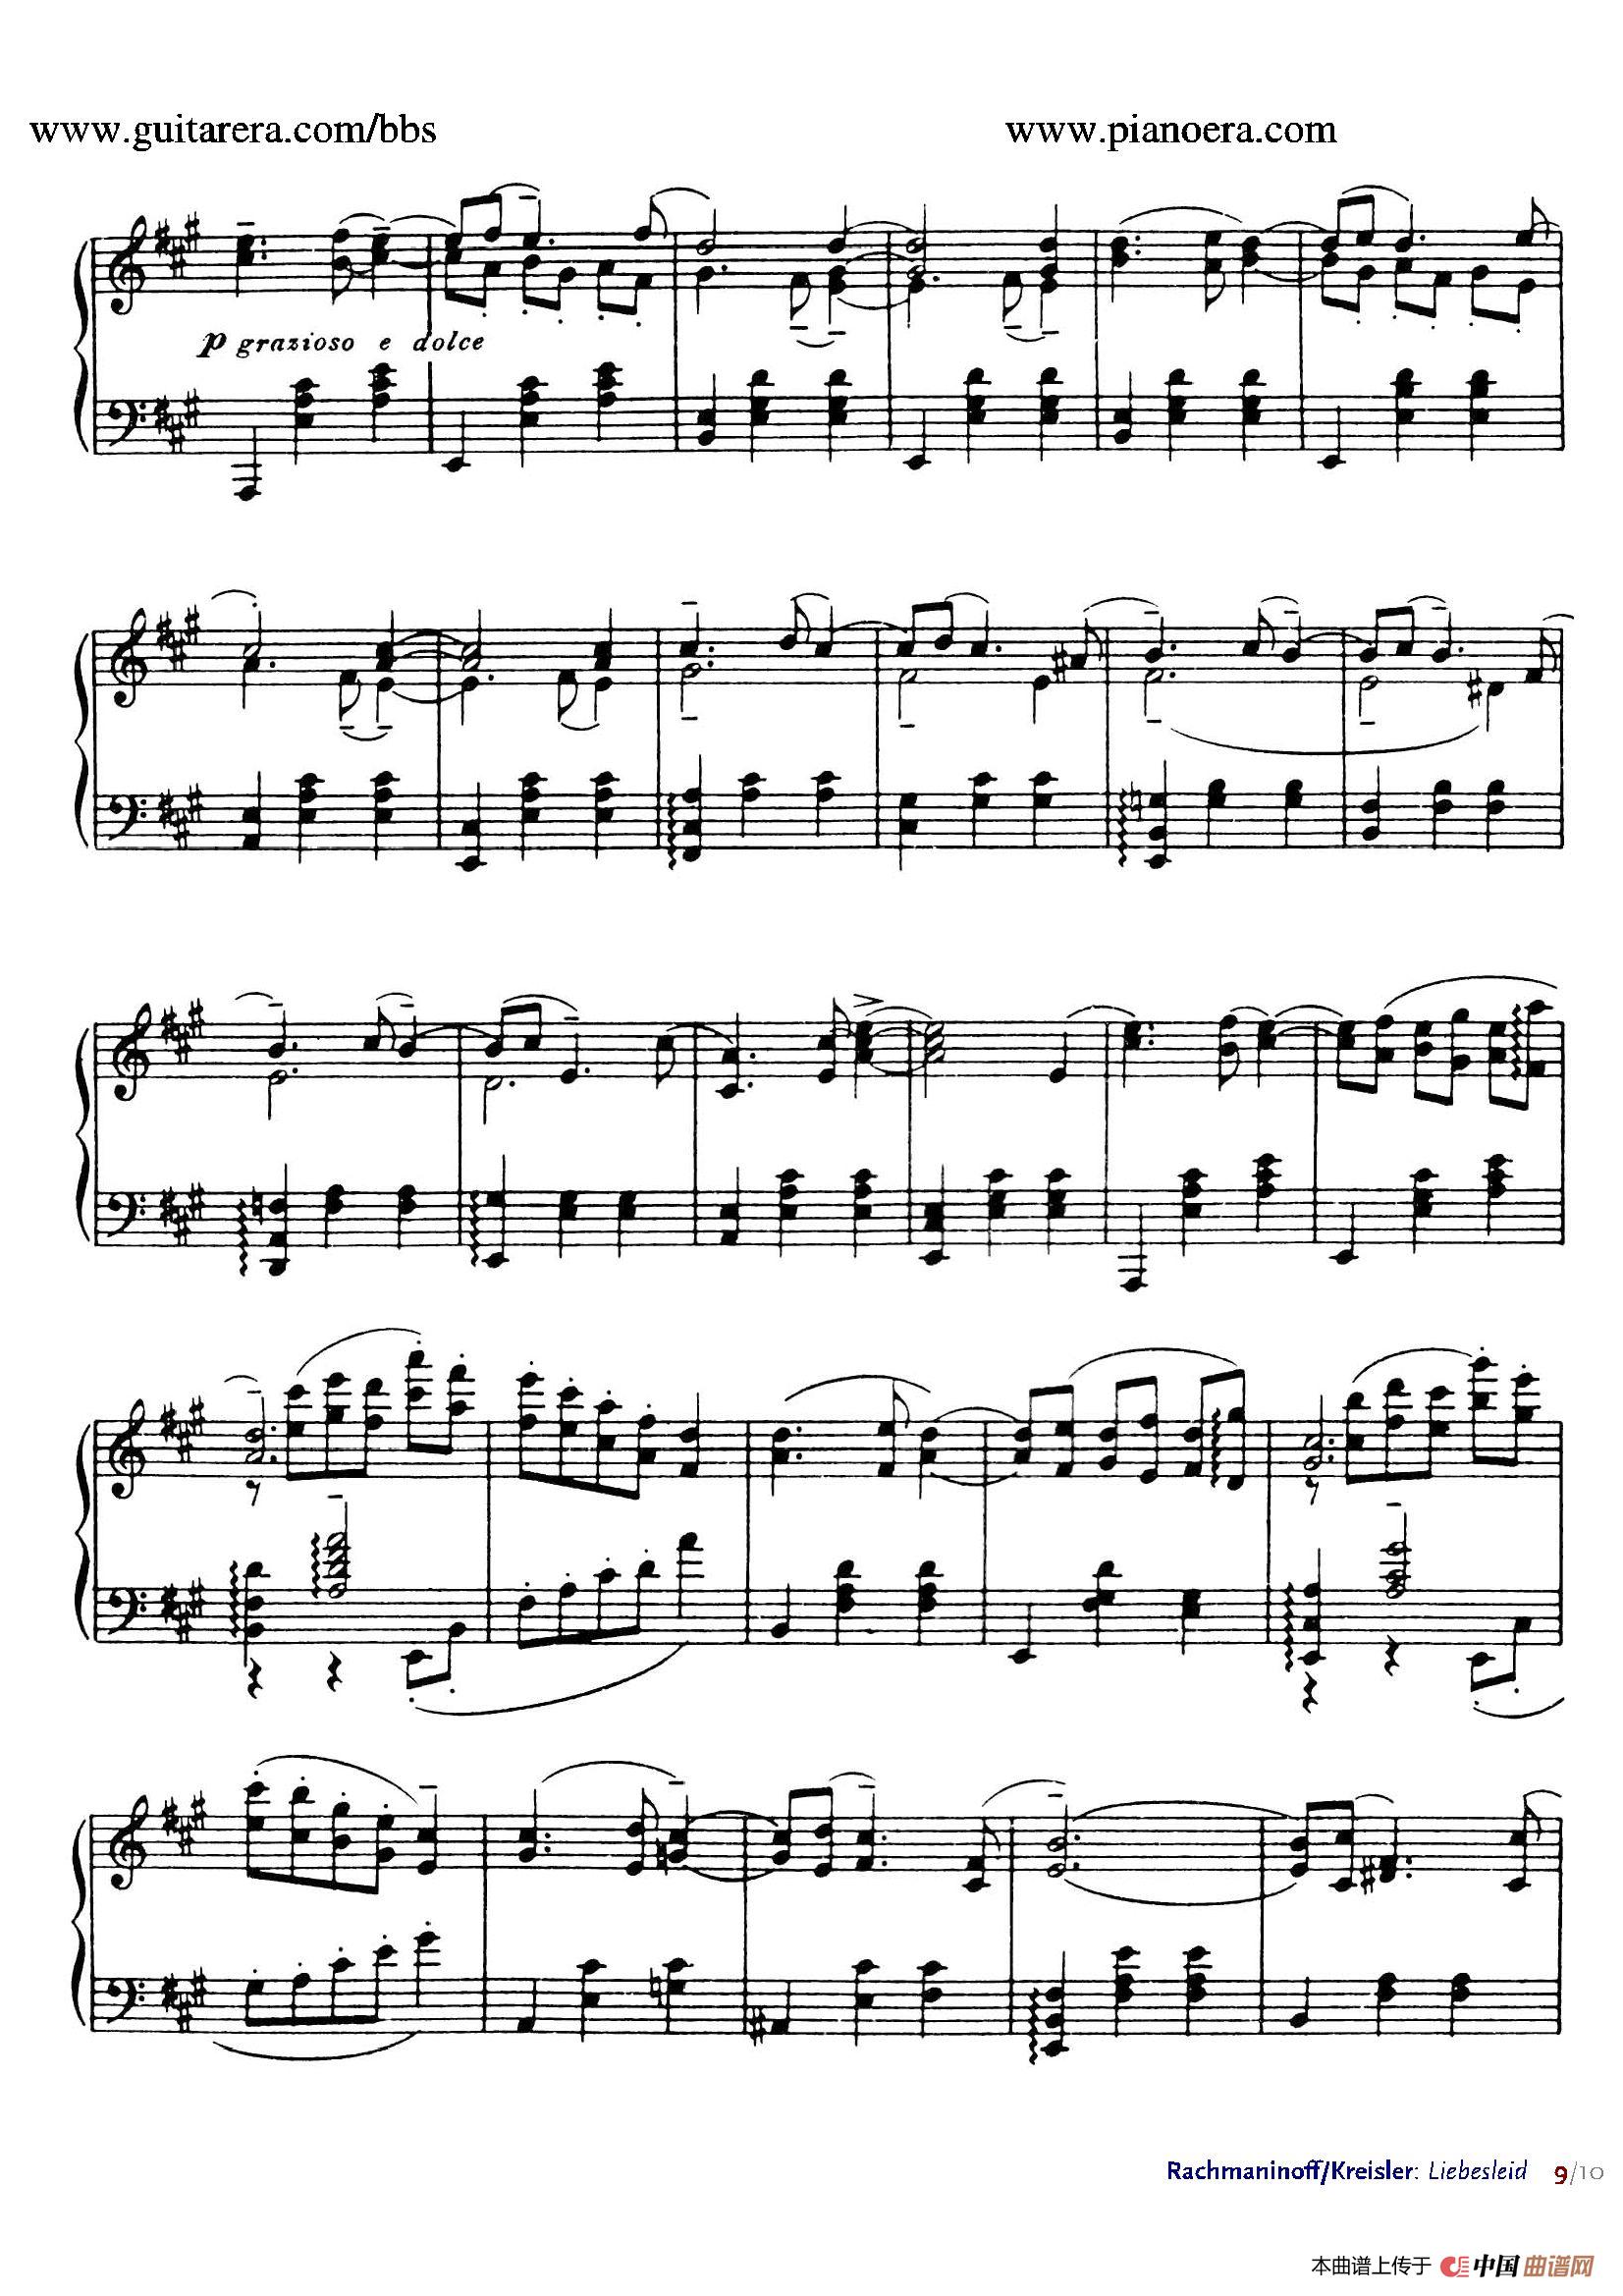 《Liebesleid》钢琴曲谱图分享